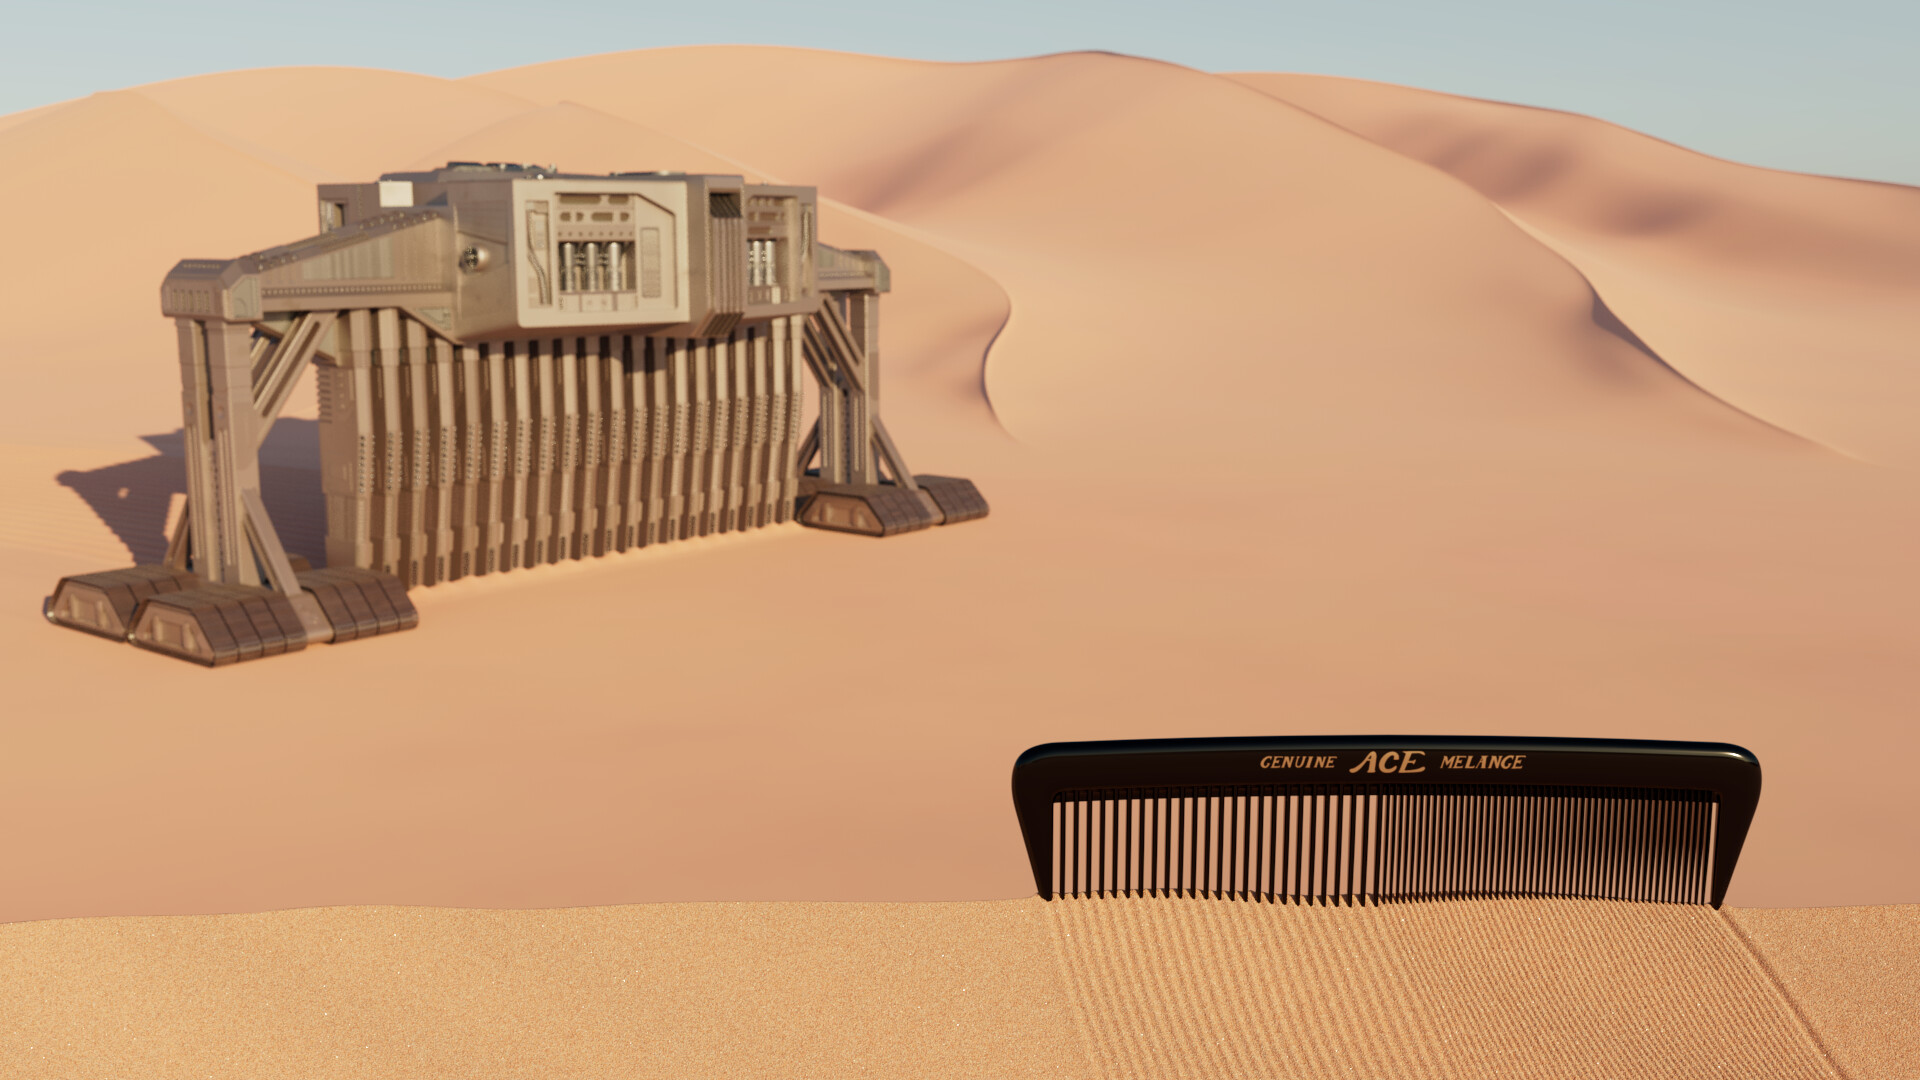 ArtStation - Comb the desert for the Spice Melange.